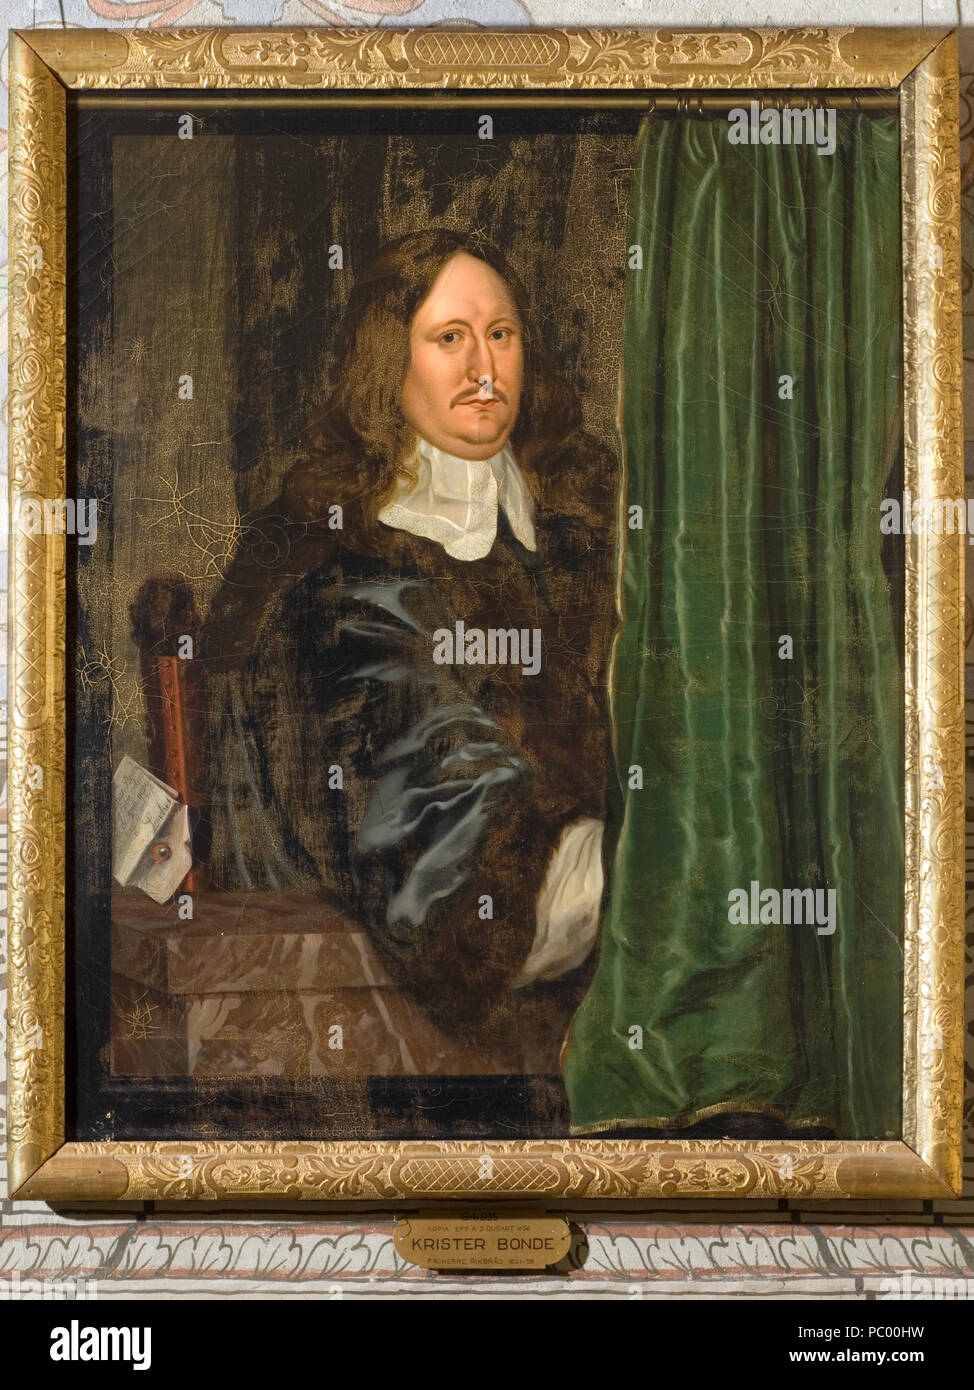 NM Grh 935 Dusart, K J (kopia efter) Krister Bonde 9 Christer Bonde, 1621-1659, friherre, riksråd, president i Kommerskollegium - Nationalmuseum - 15605 Stock Photo